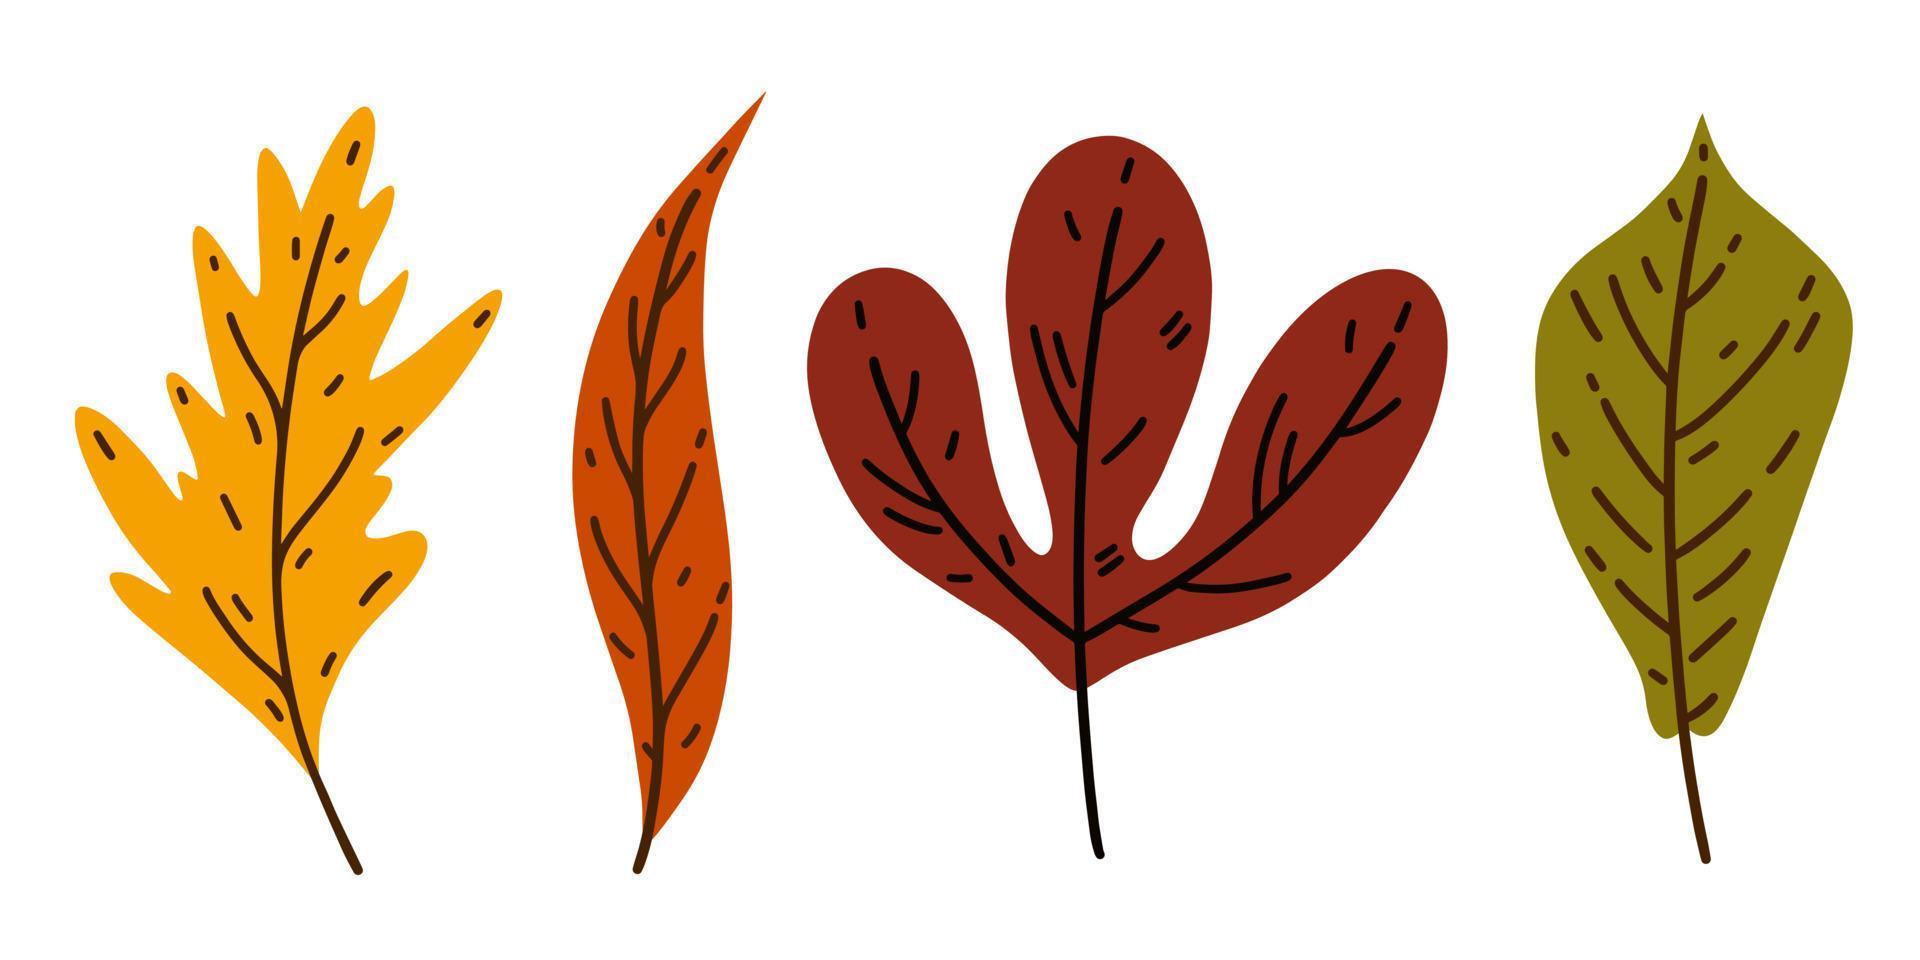 conjunto de vetores de folhas de outono brilhantes. esboço desenhado à mão de uma planta florestal. folhas de jardim e árvores selvagens - bordo, bétula, salgueiro, carvalho. ilustração botânica de outono, coleção de clipart de desenho animado plano